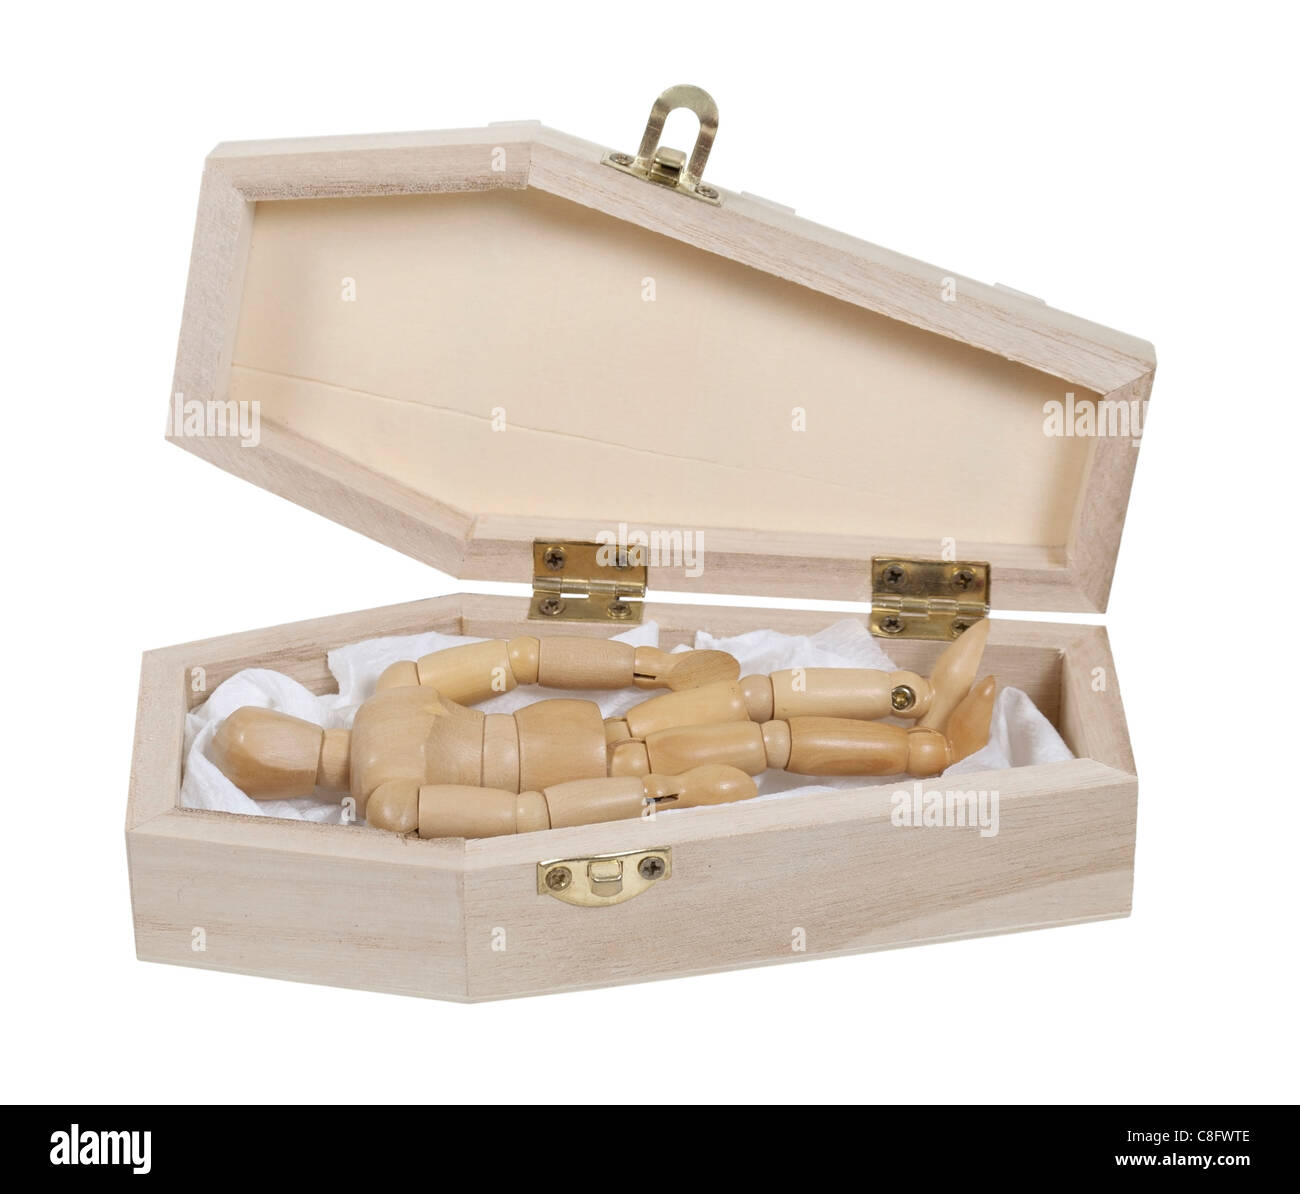 Holzmodell Verlegung in einem Sarg in die Vorbereitungen für die Beerdigung - Pfad enthalten Stockfoto